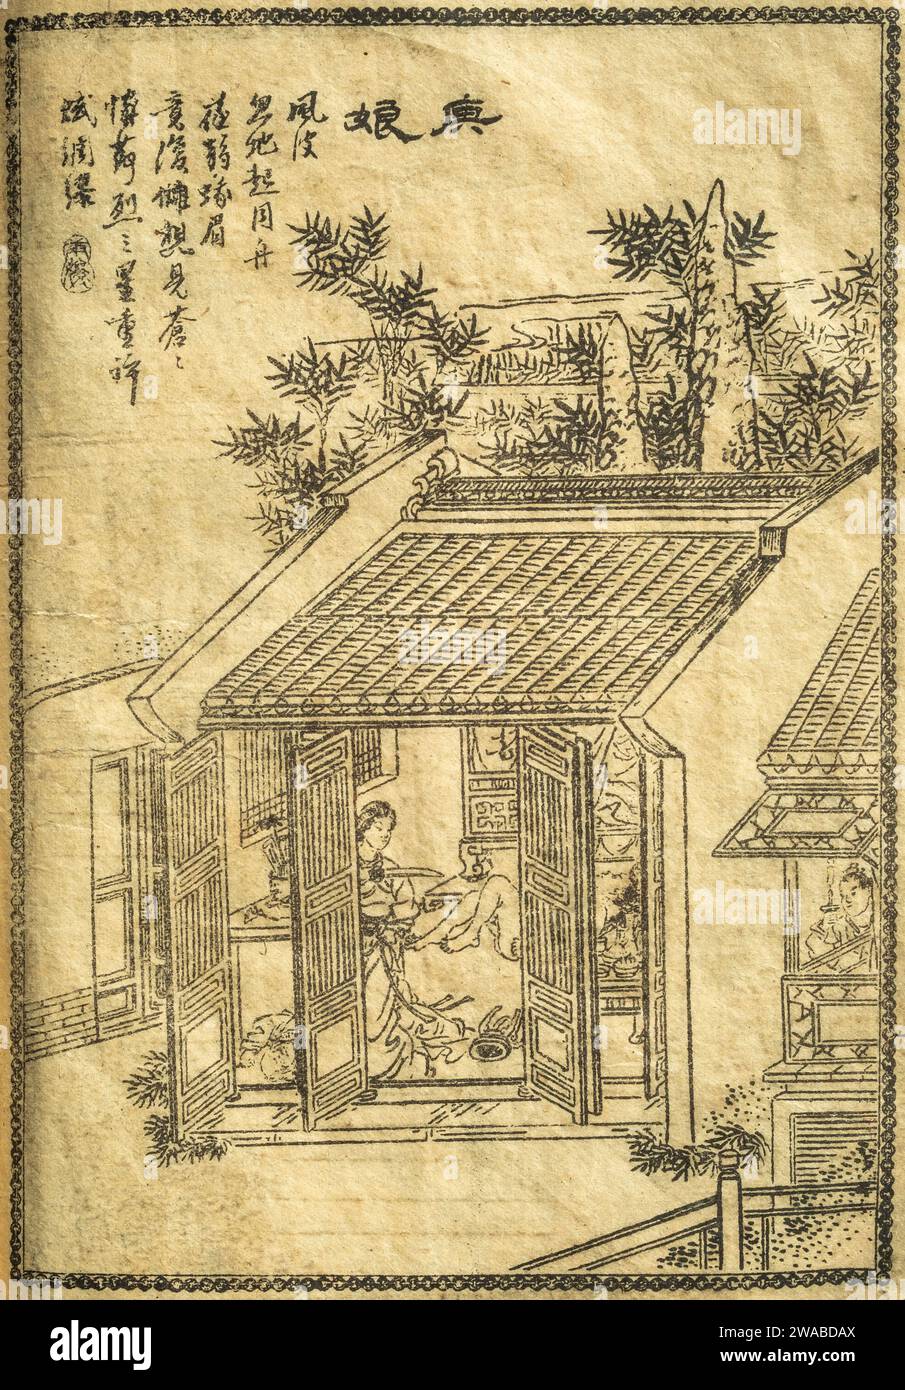 Une illustration d'une scène de la nouvelle 'Geng Niang' recueillie dans Strange Tales from a Chinese Studio (Liaozhai Zhiyi) par pu Songling. Banque D'Images